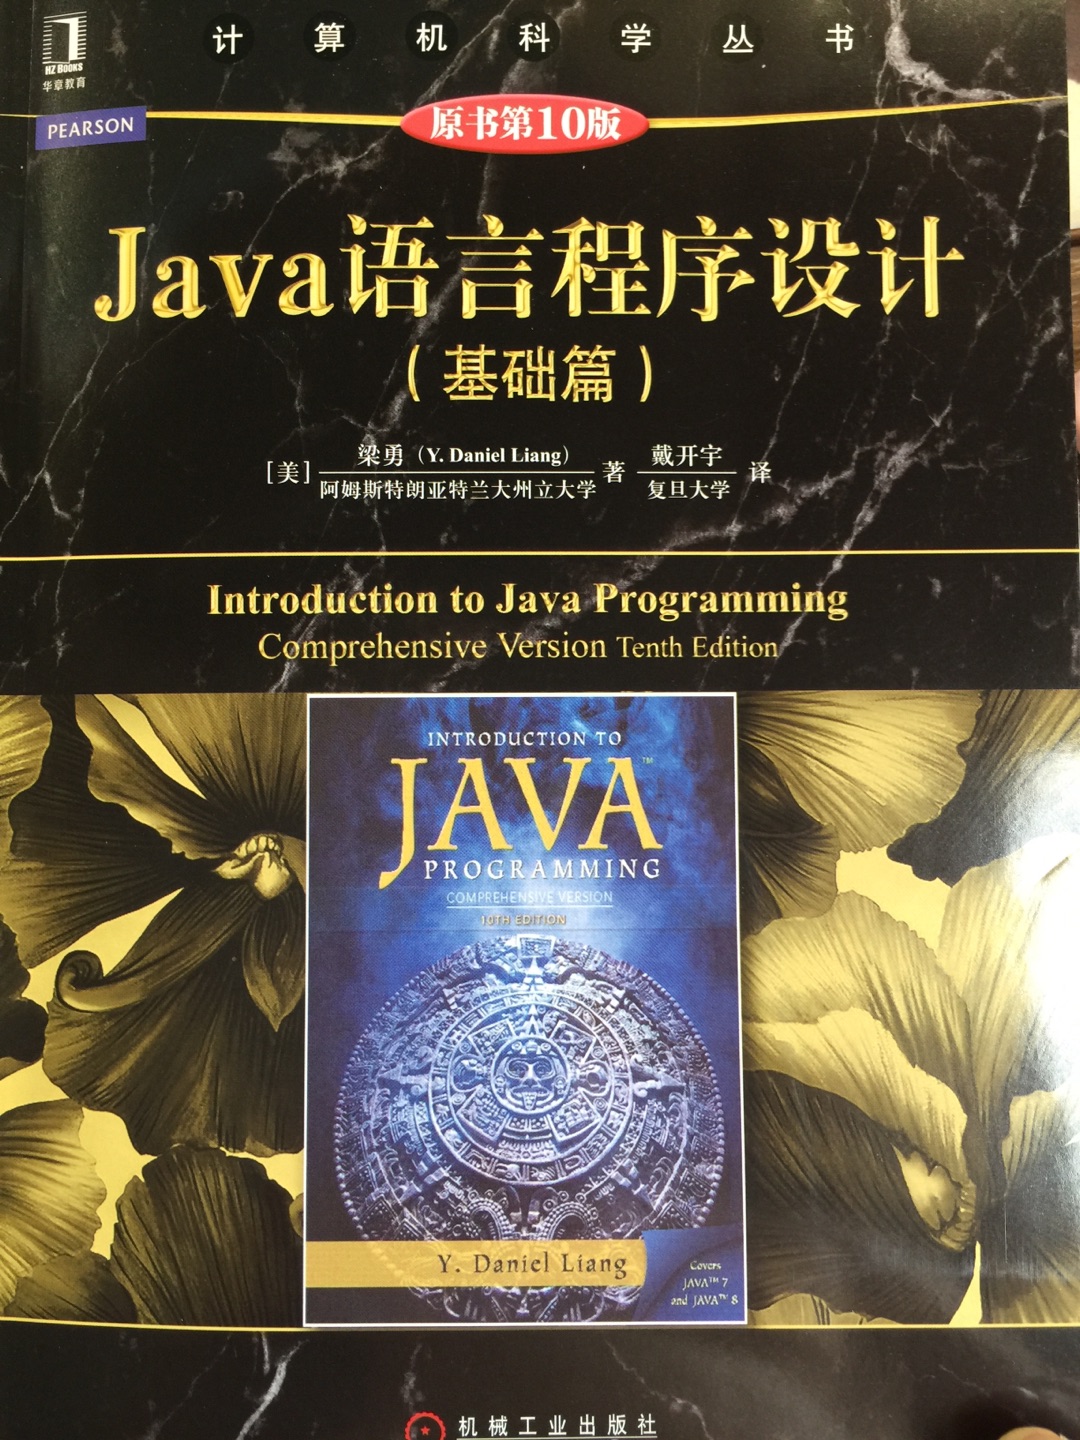 很好的机工版Java语言程序设计书。